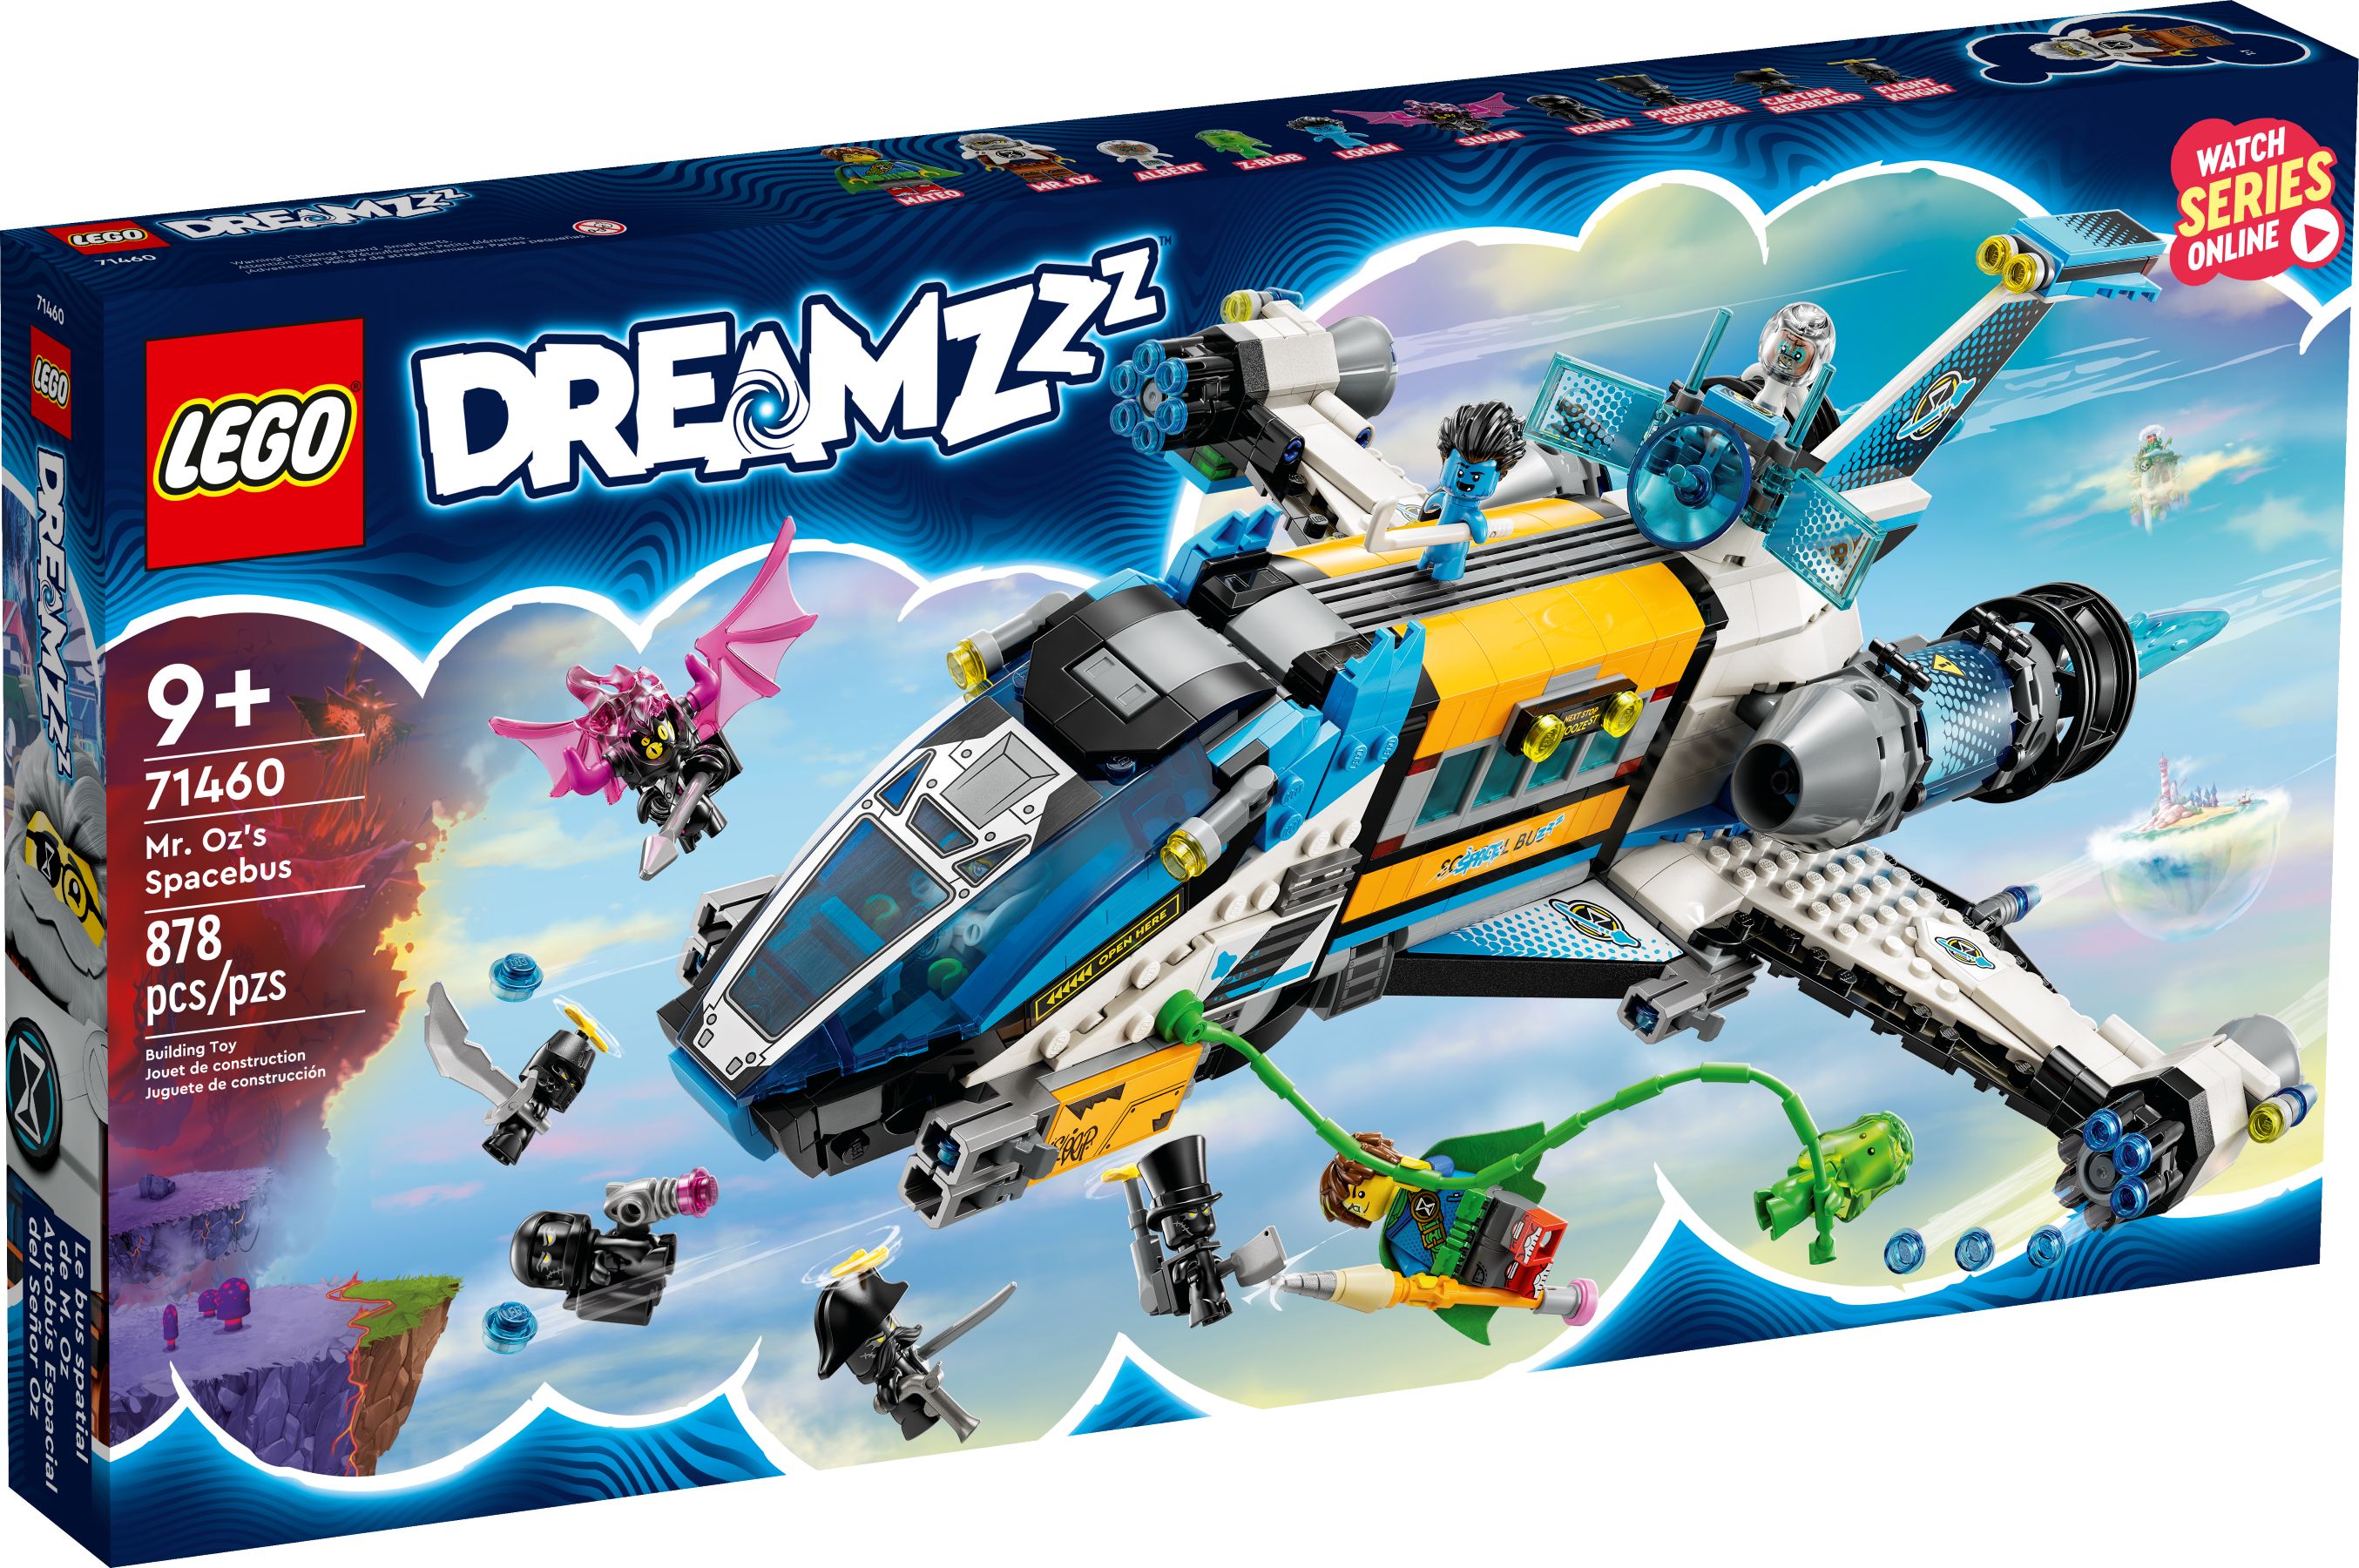 LEGO Dreamzzz 71460 Der Weltraumbus von Mr. Oz LEGO_71460_alt1.jpg